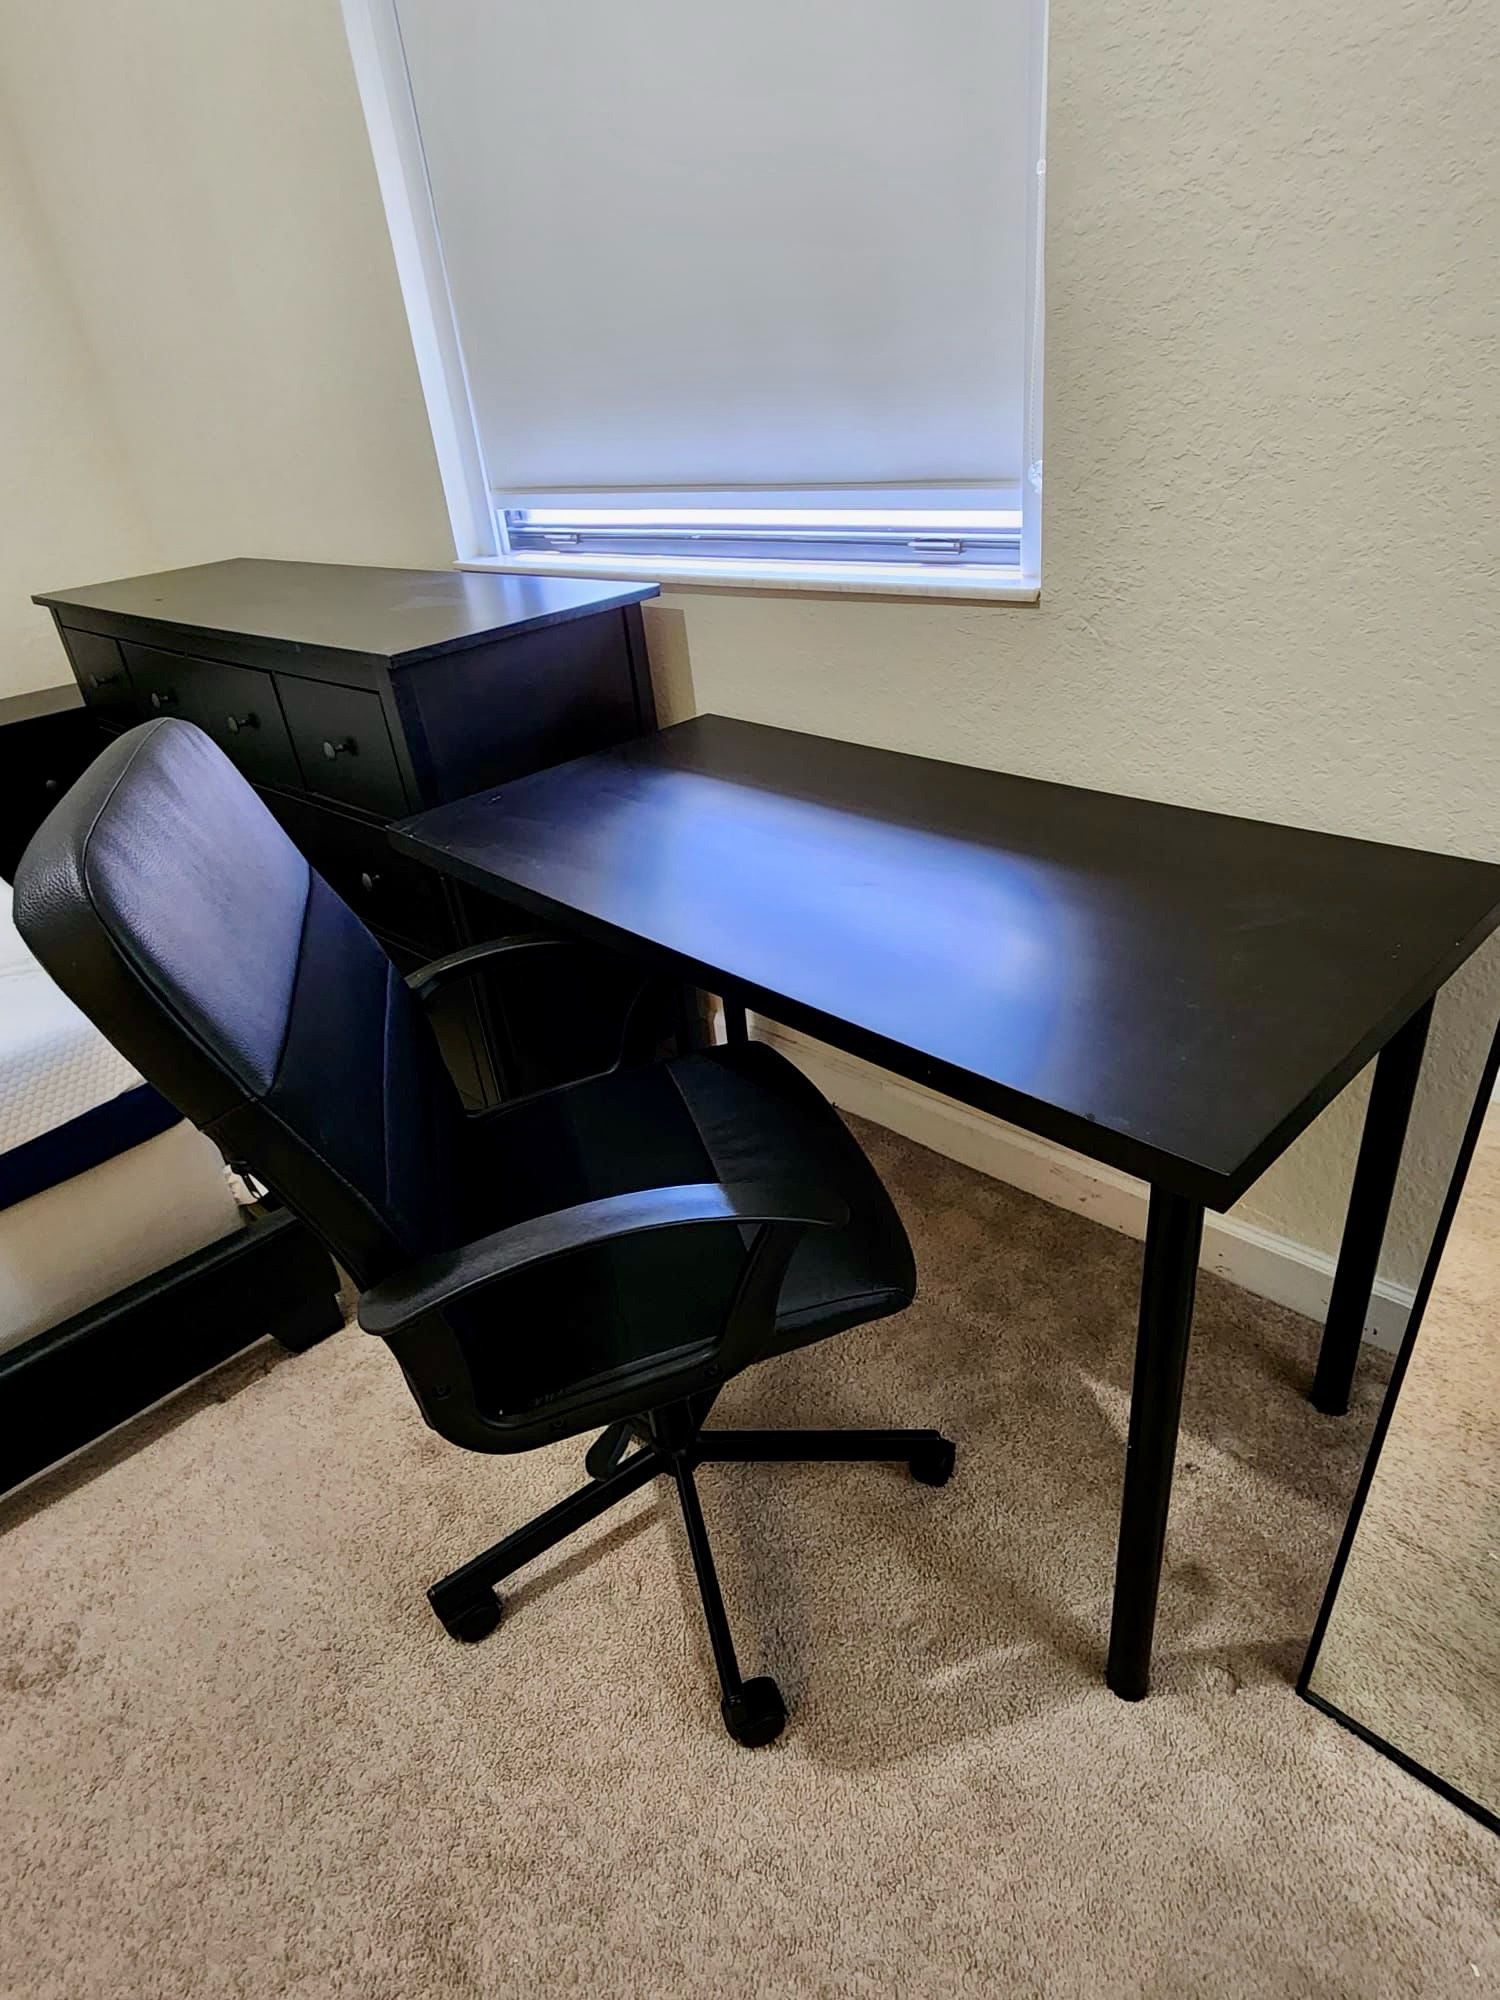 Desk table and chair combo. Excellent Condition. Litter Used. Combo mesa de escritorio con silla.